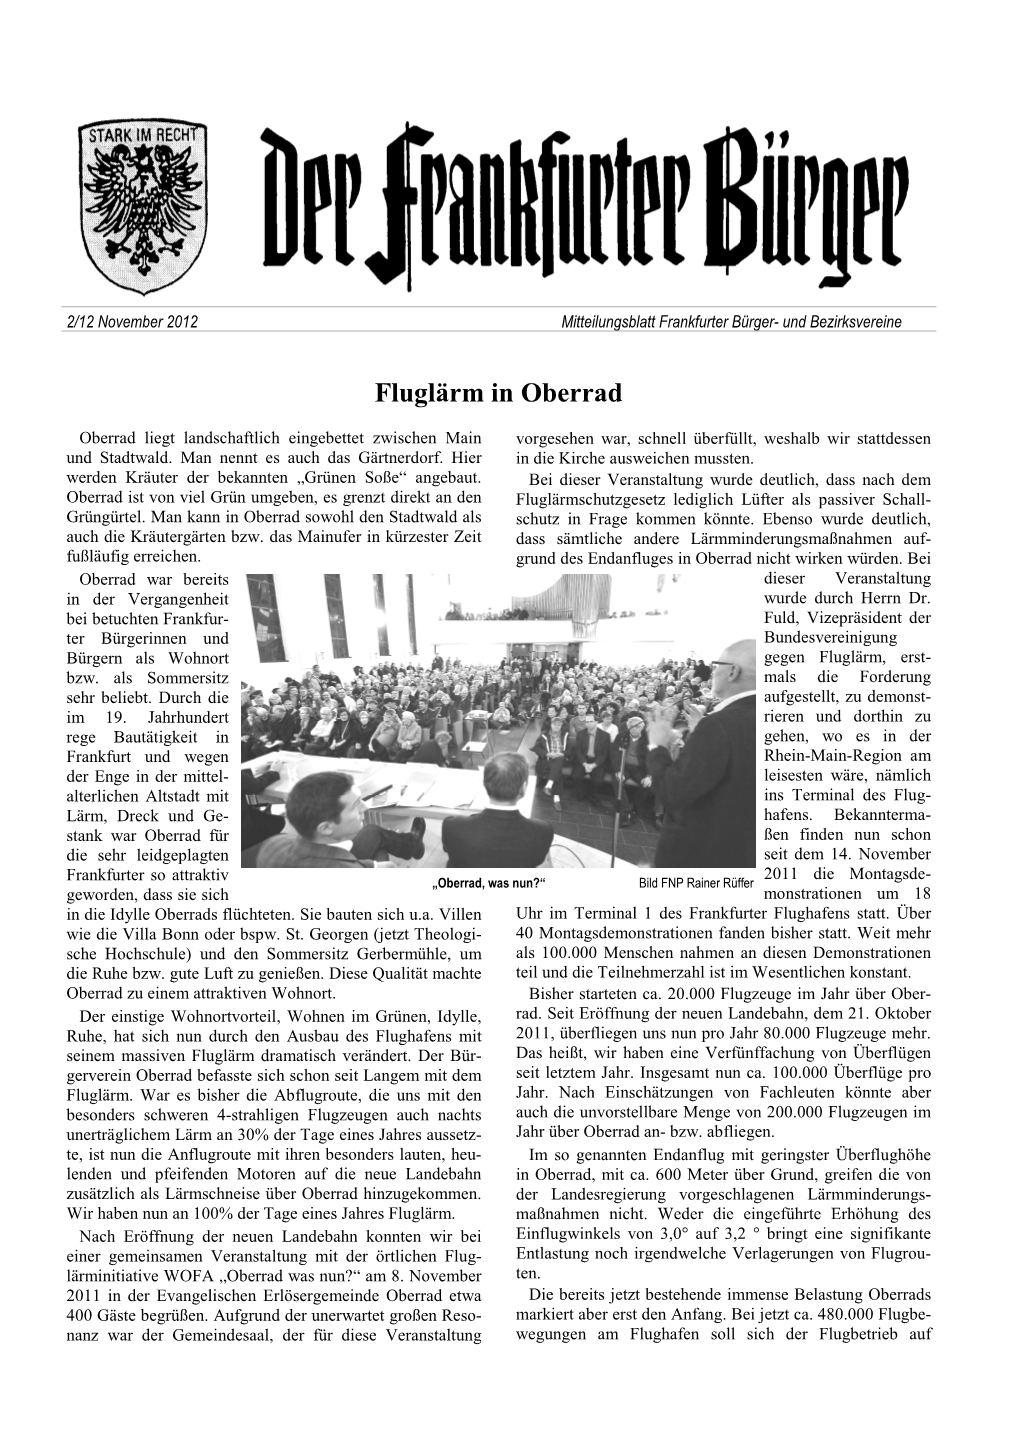 Der Frankfurter Bürger November 2012